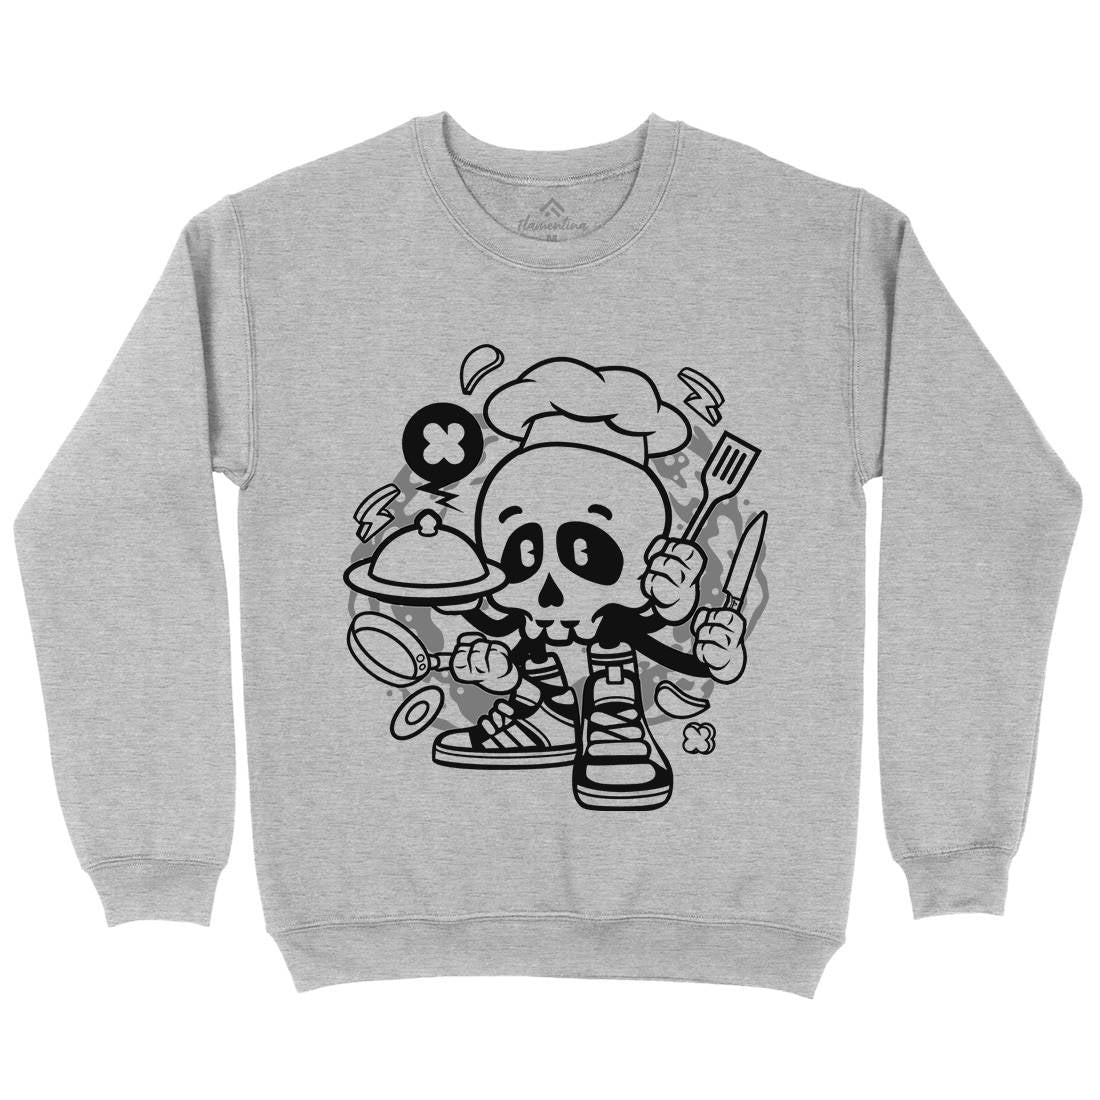 Chef Skull Kids Crew Neck Sweatshirt Work C058